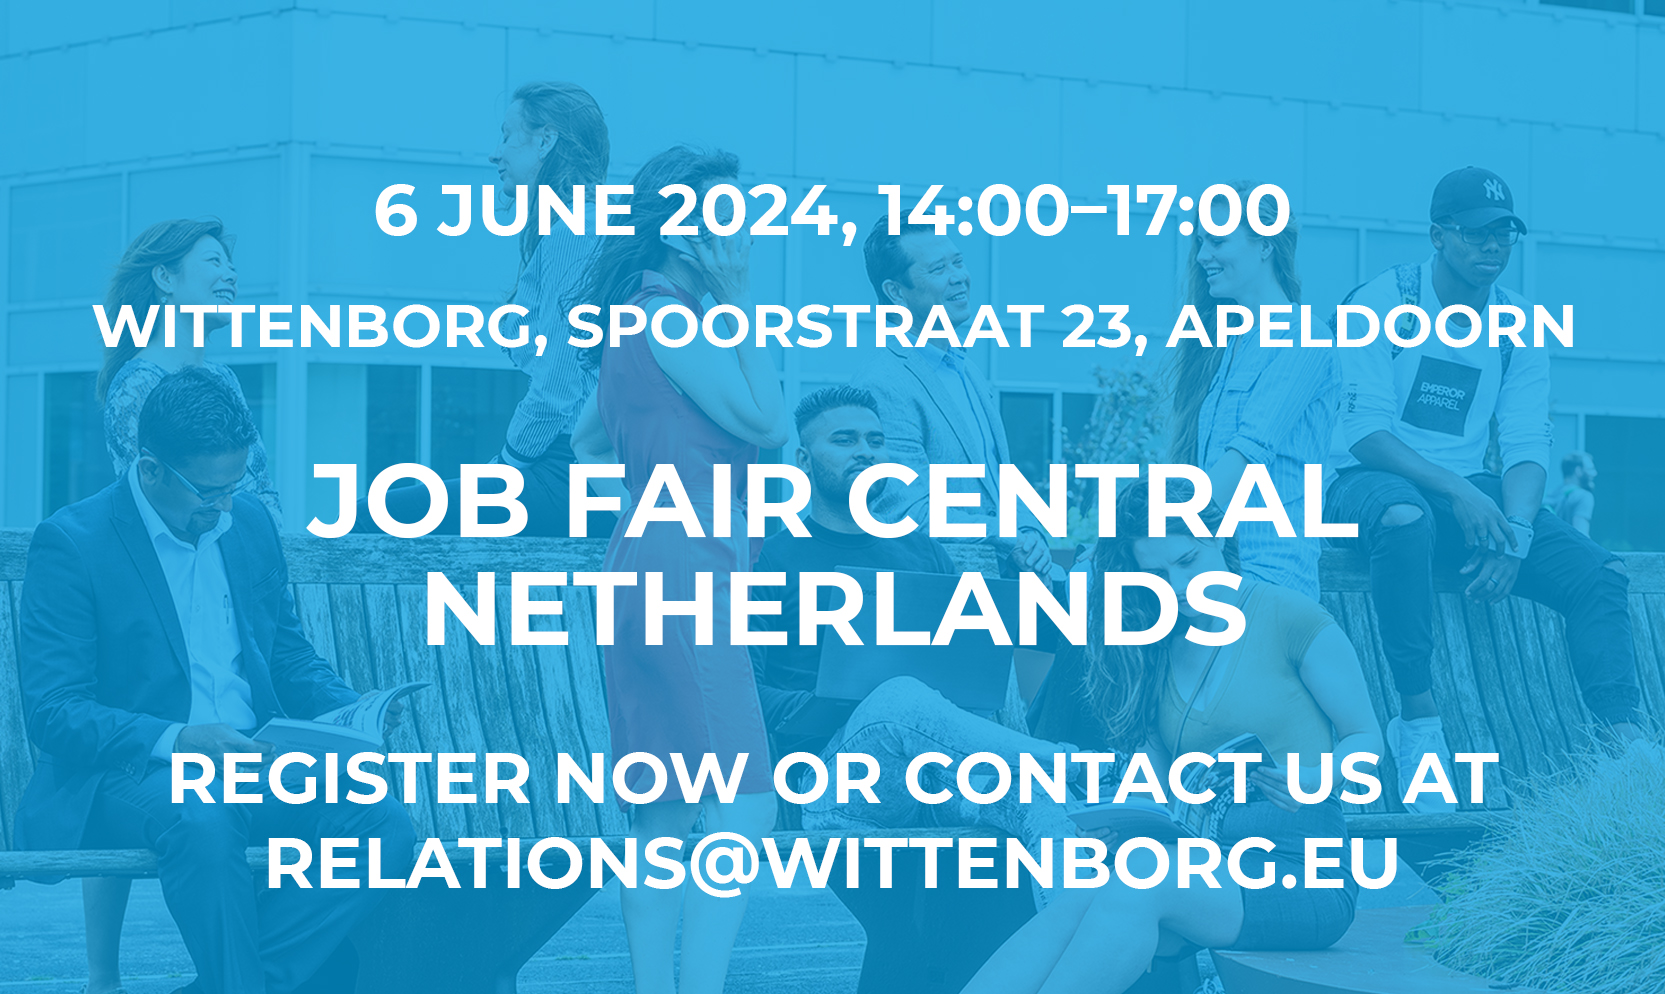 Job Fair Central Netherlands, 6 June 2024